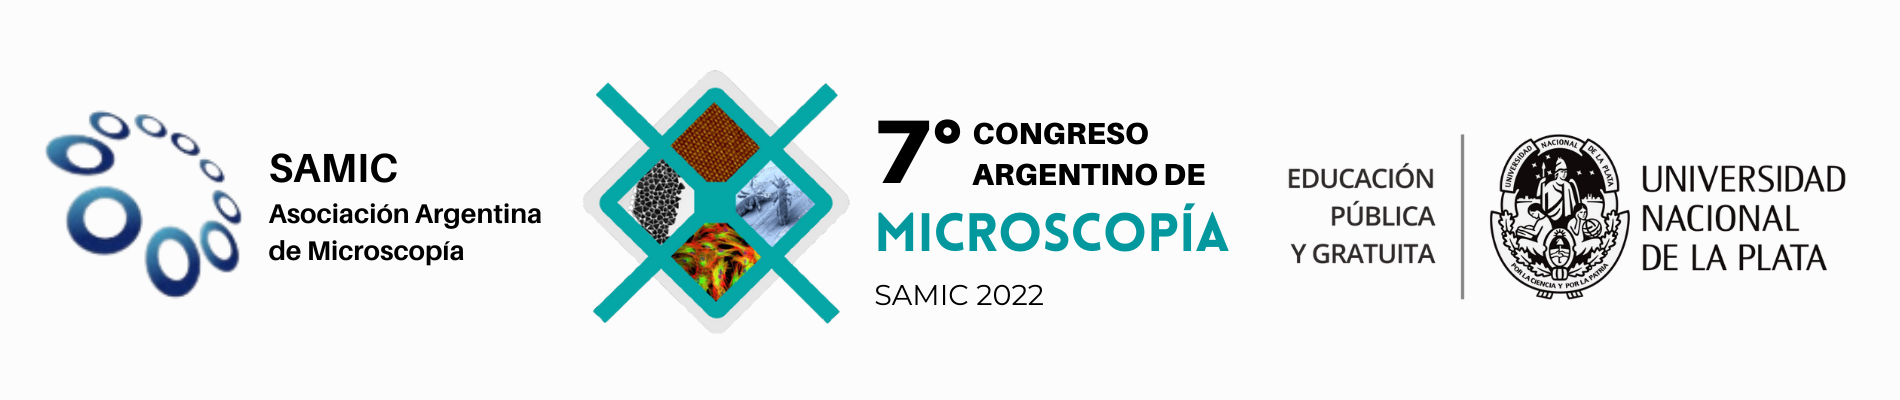 7° Congreso Argentino de Microscopía SAMIC 2022 Logo